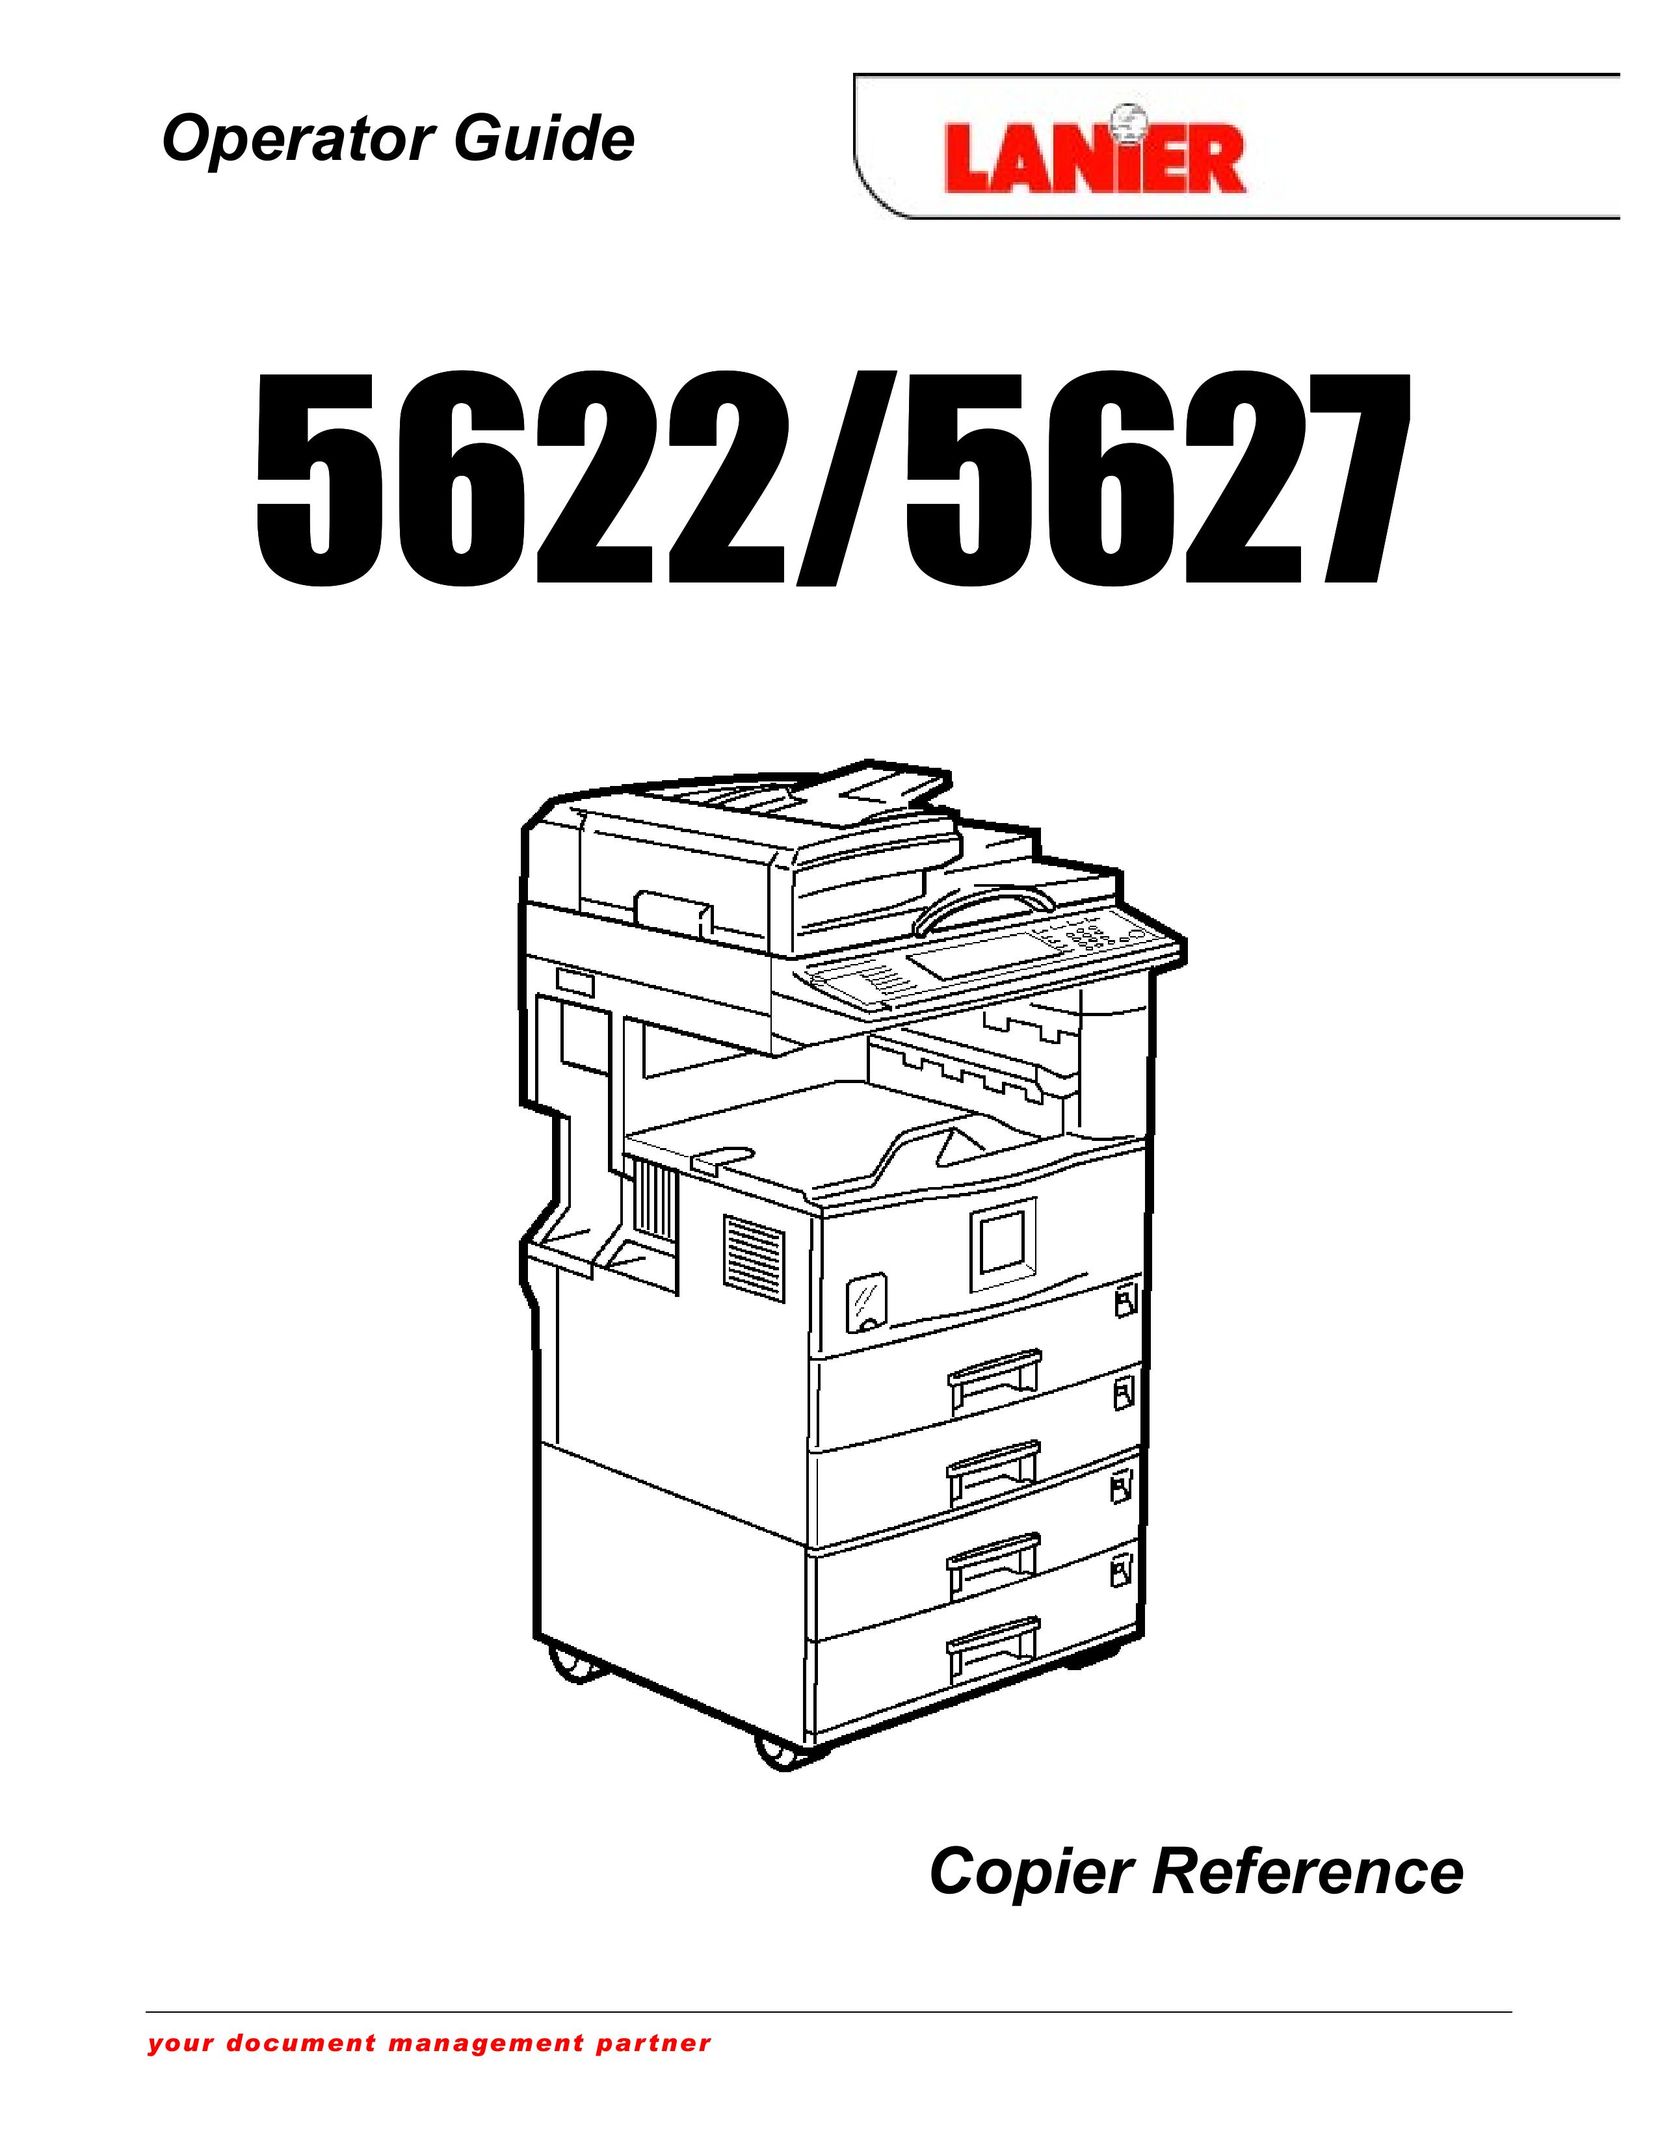 Lanier AFICIO 1022 Copier User Manual